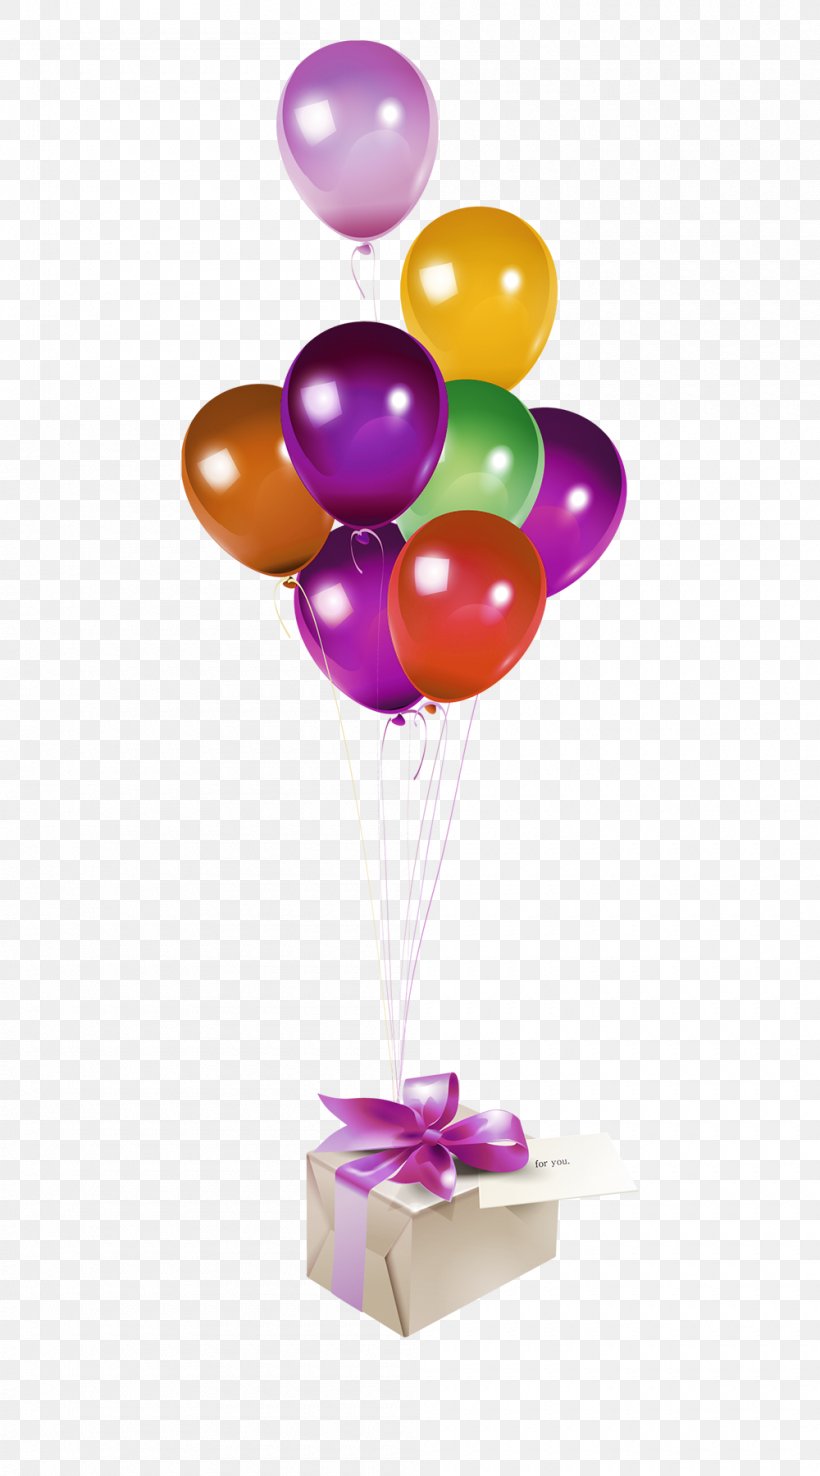 Gift Balloon Designer, PNG, 1000x1800px, Gift, Balloon, Cluster Ballooning, Designer, Gratis Download Free